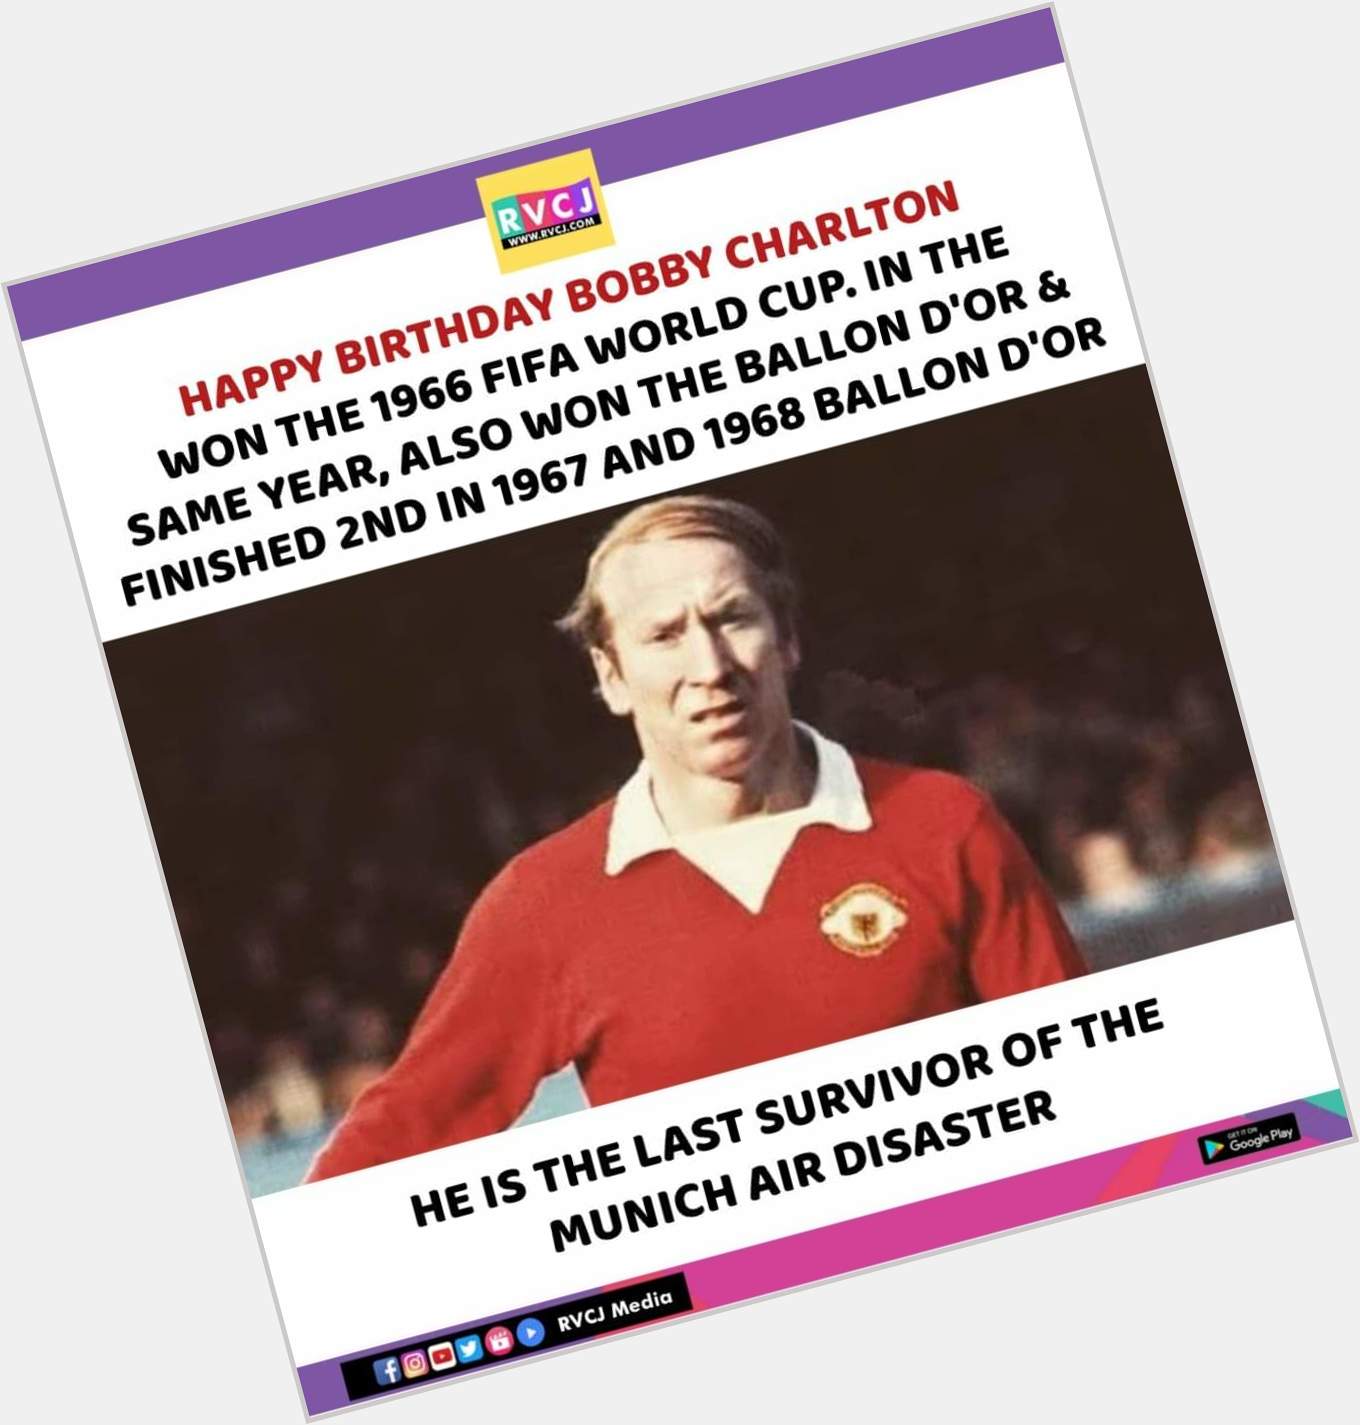 Happy birthday Bobby Charlton. 